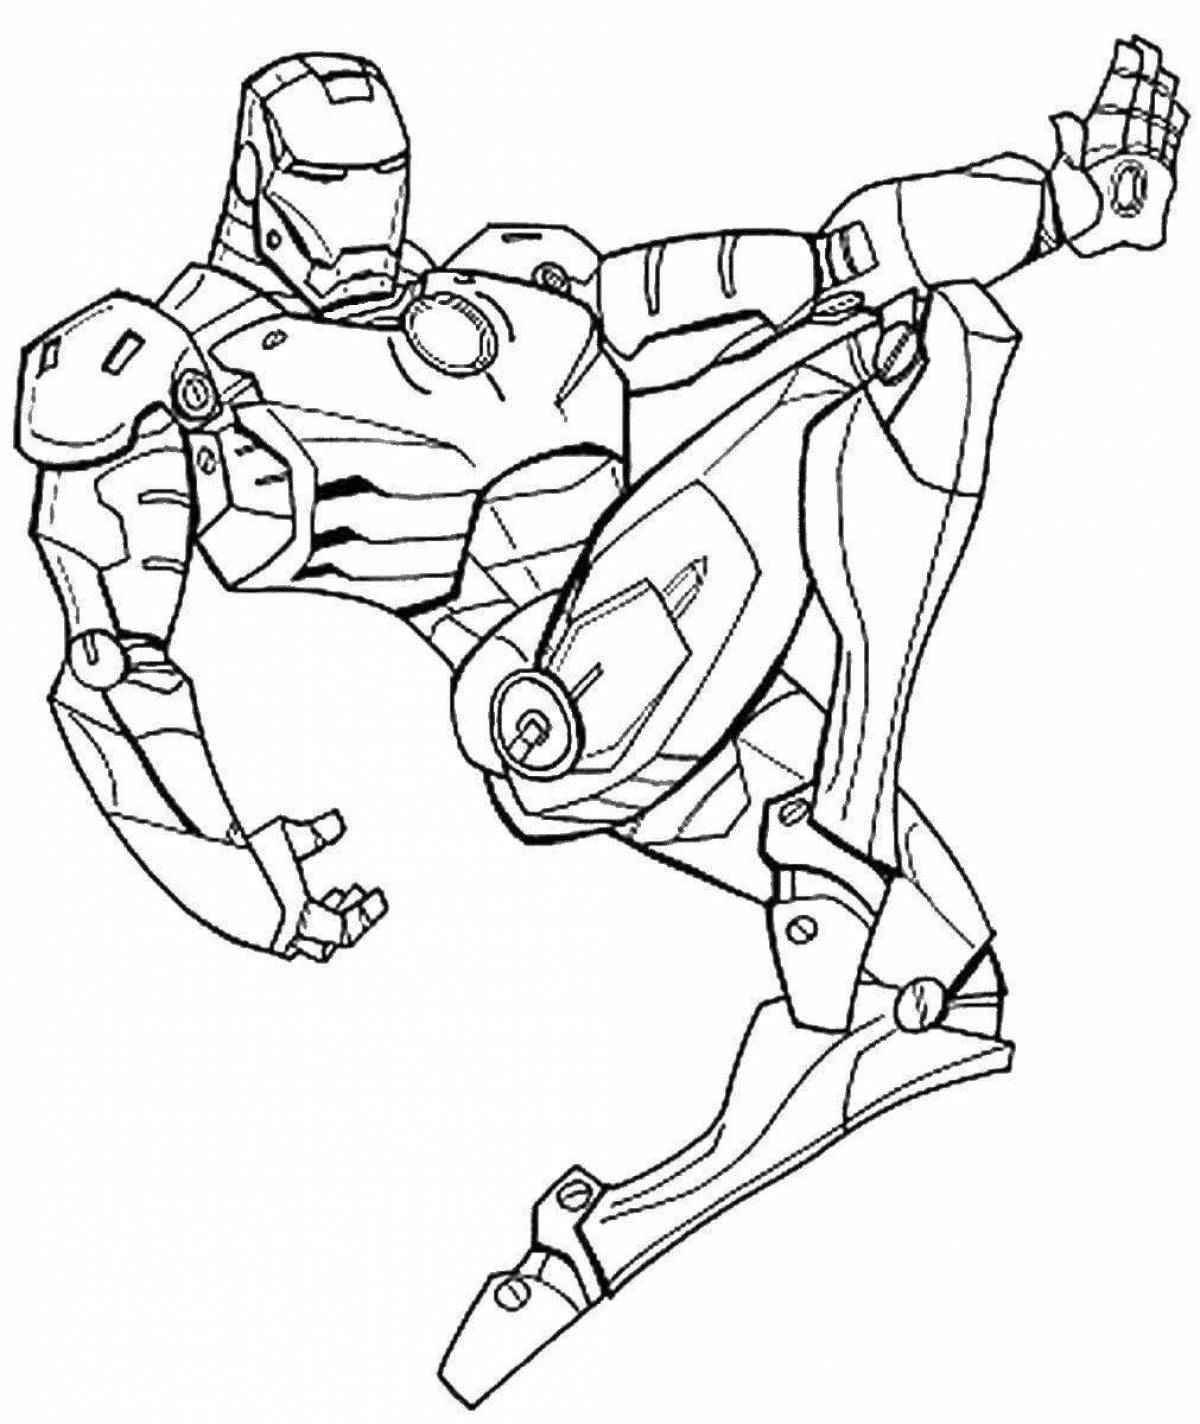 Elegant iron man coloring page